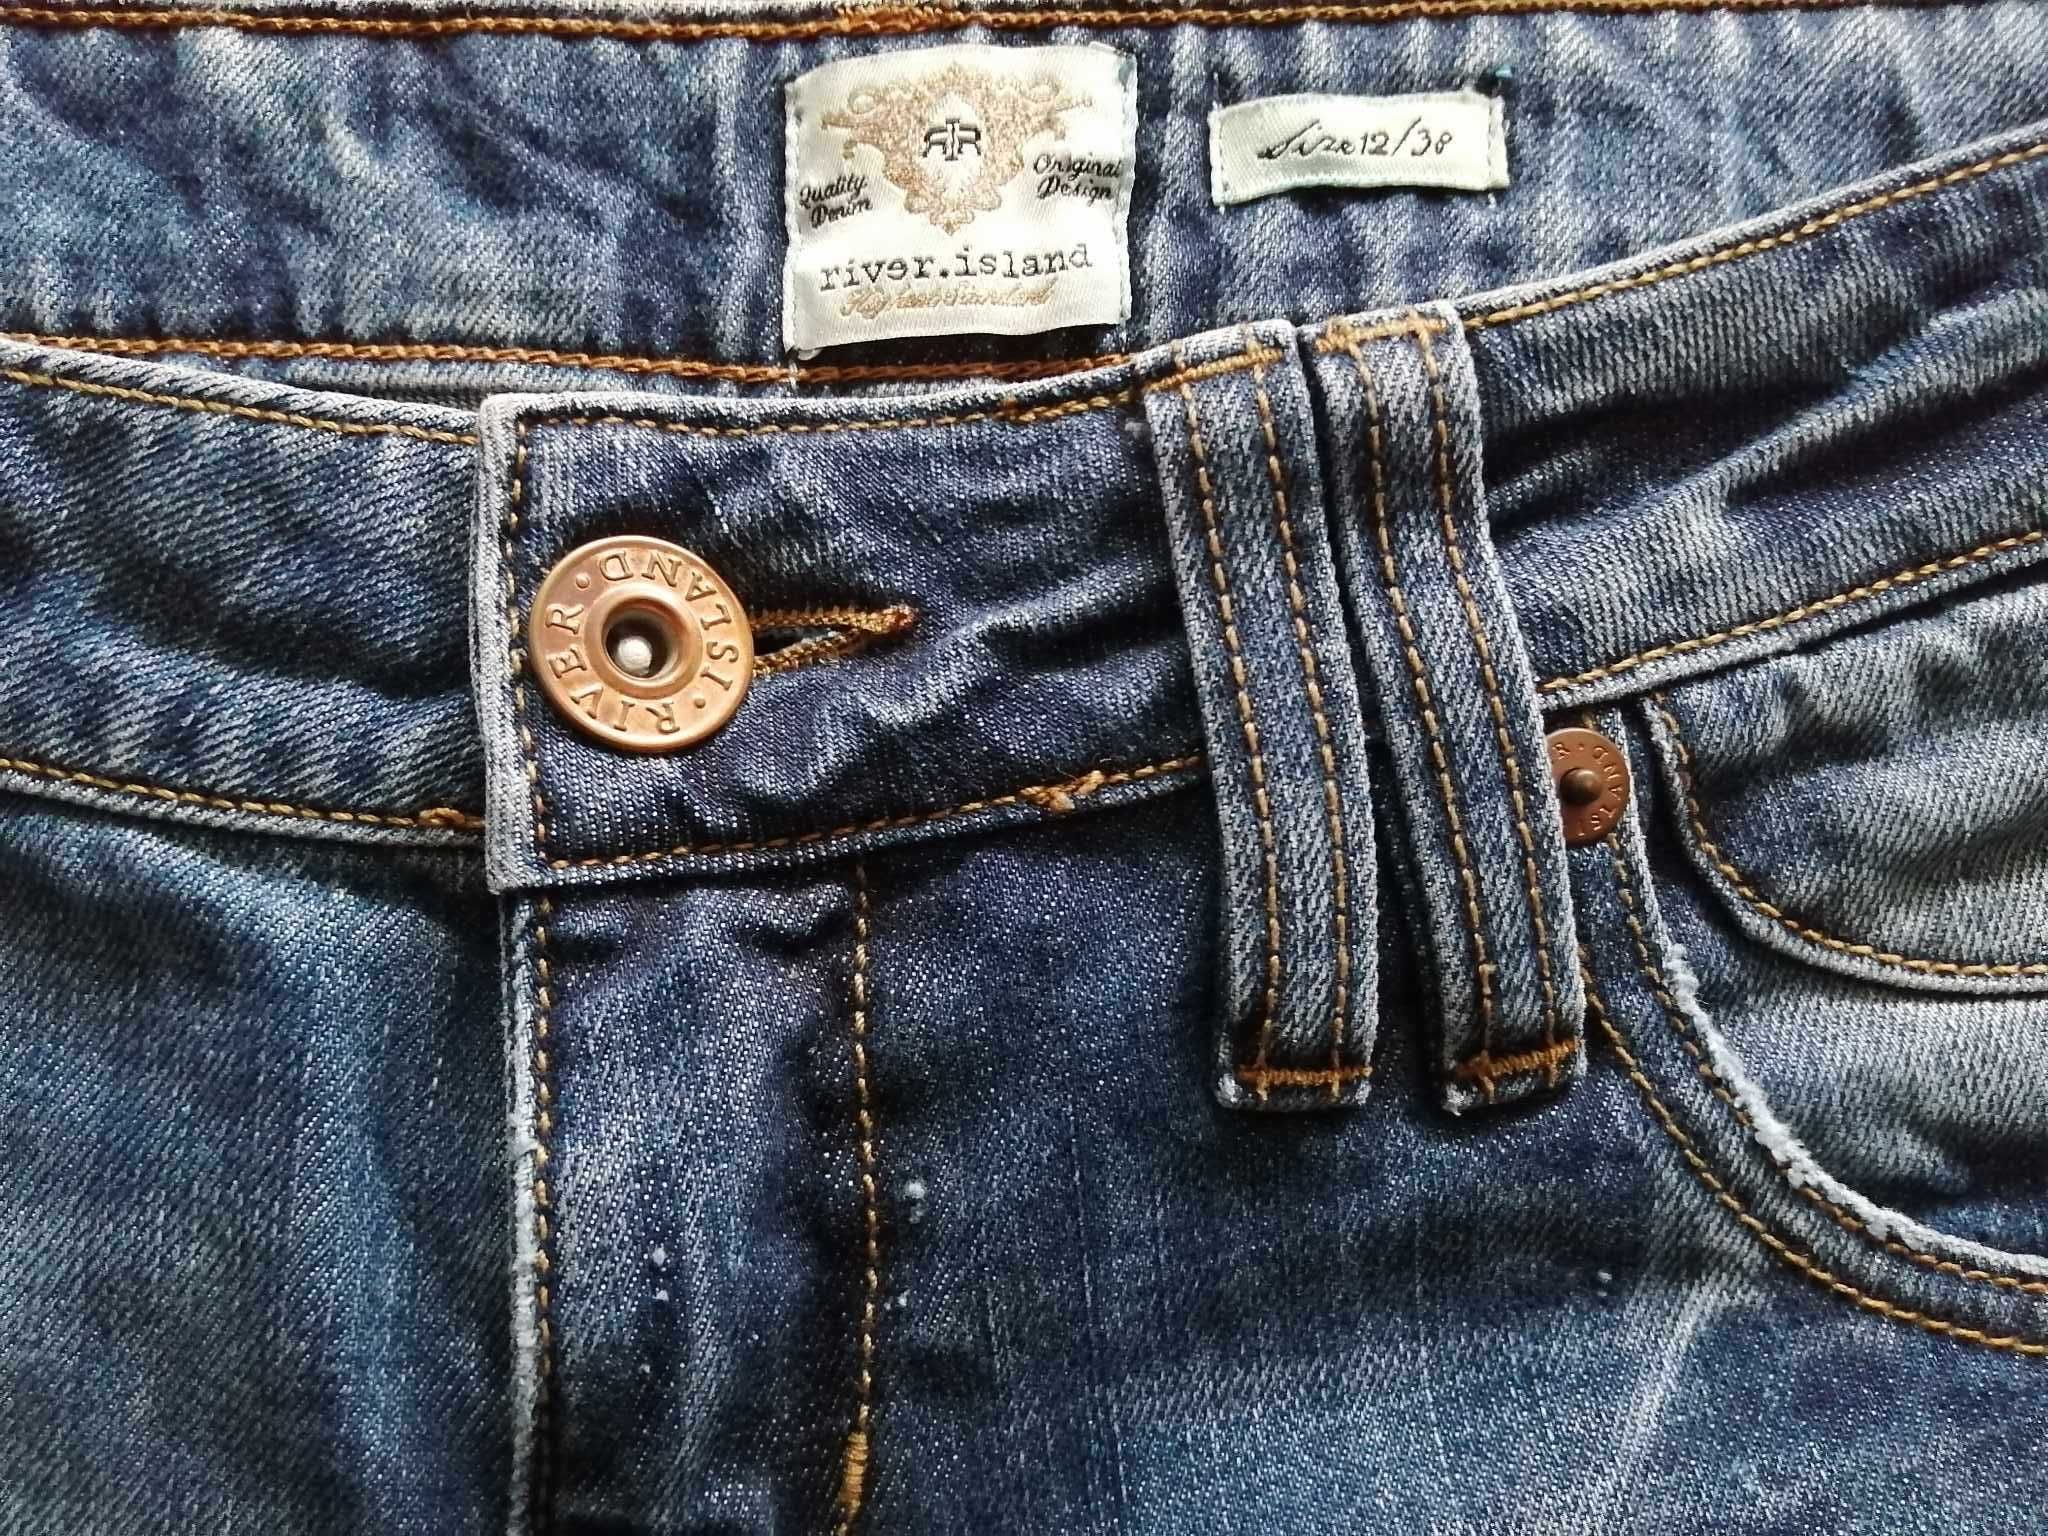 RIVER ISLAND Jeans Spodnie Damskie Eu 38 R Bawełna Oryginalne 100%